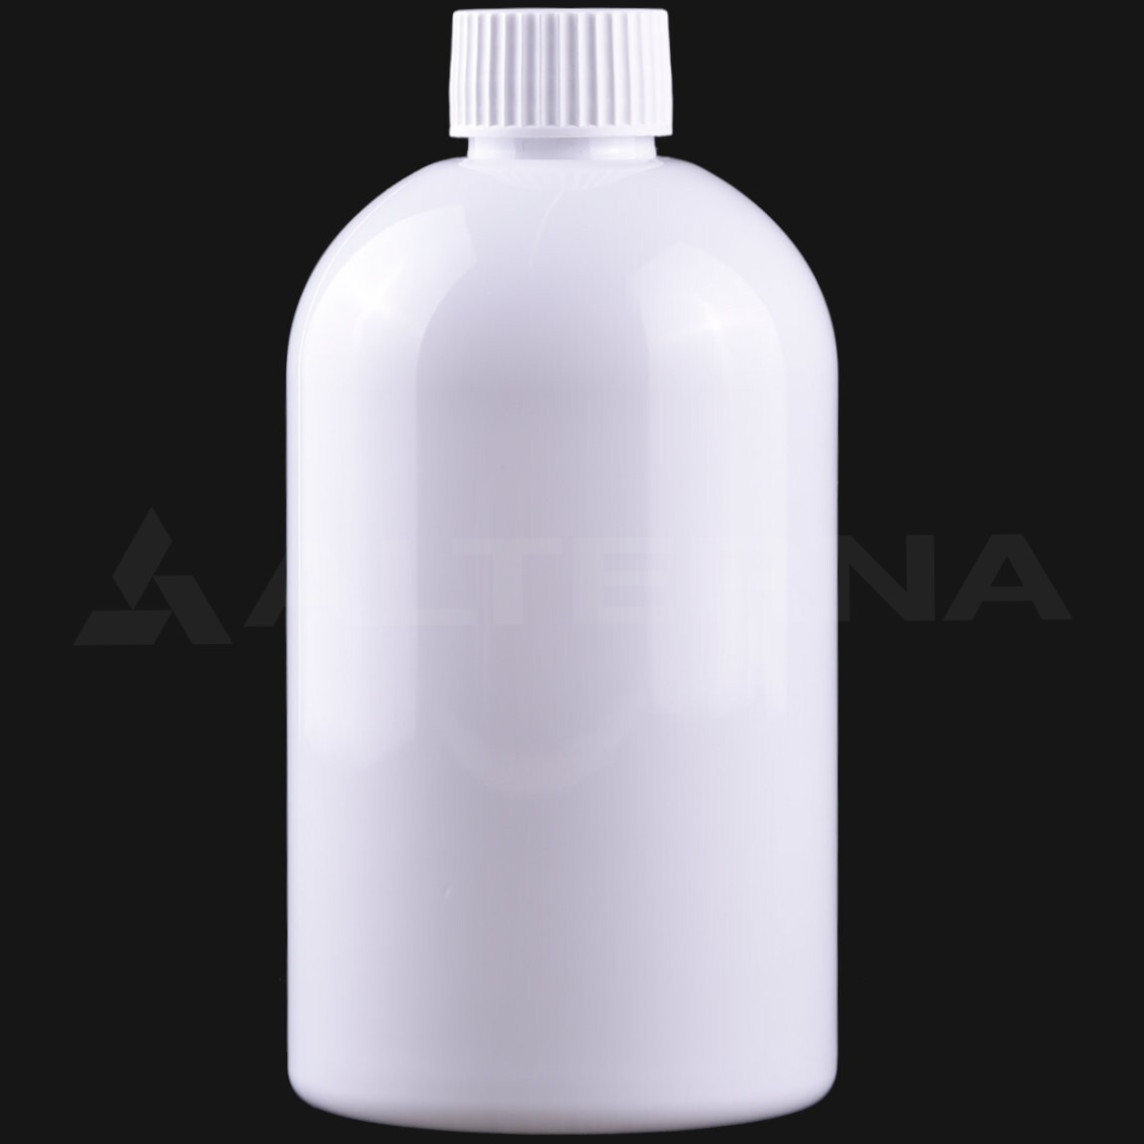 500 ml PET Bottle with 28 mm Foam Seal Cap